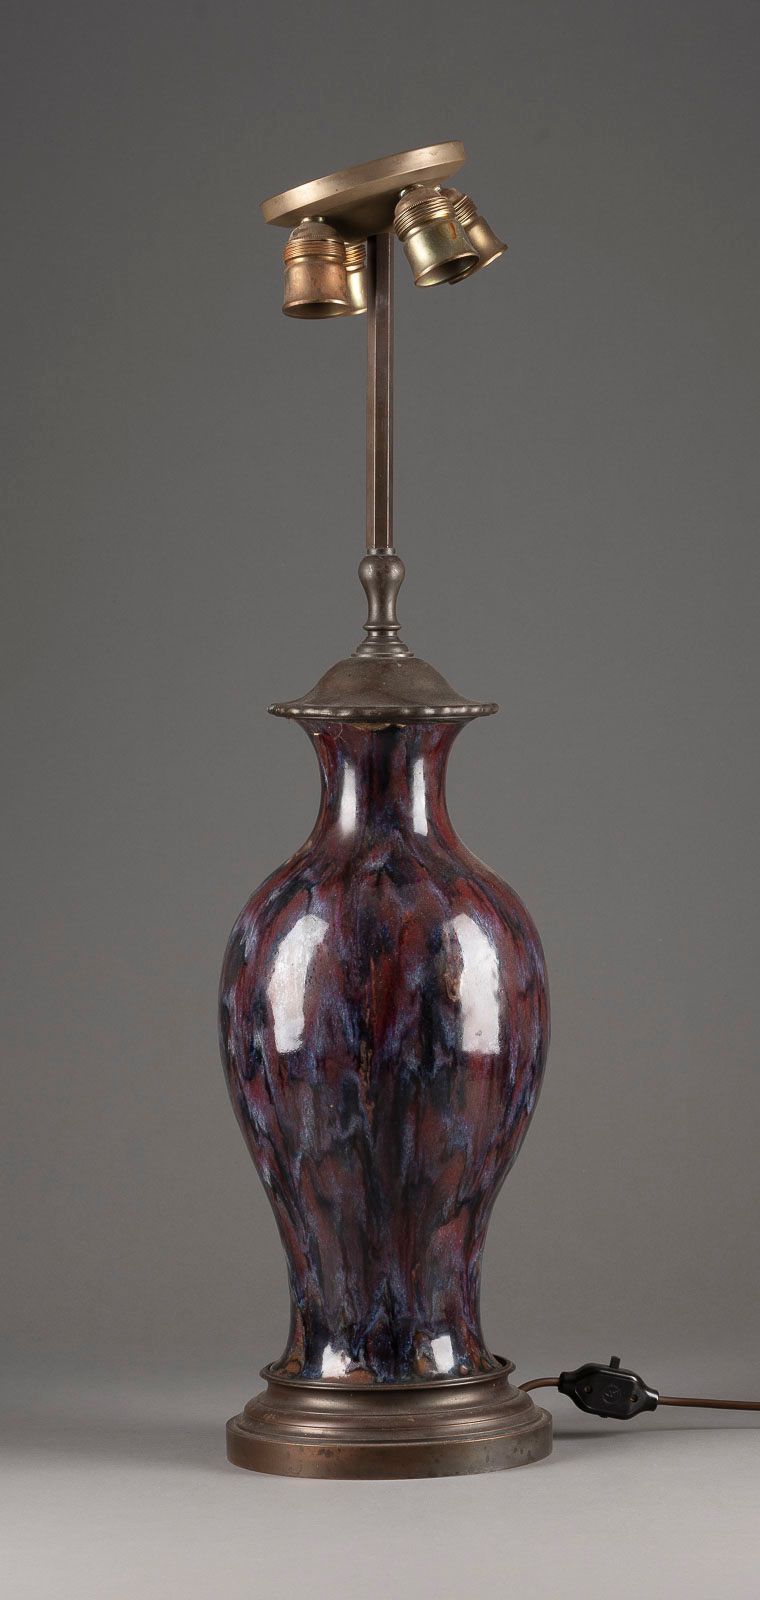 Null 带流动釉的灯 可能是法国，皮埃尔-阿德里安-达尔帕拉特的风格，1900年左右 石器，深红色、紫色、棕色的流动釉，金属支架，带电（未测试）。高82厘米。&hellip;